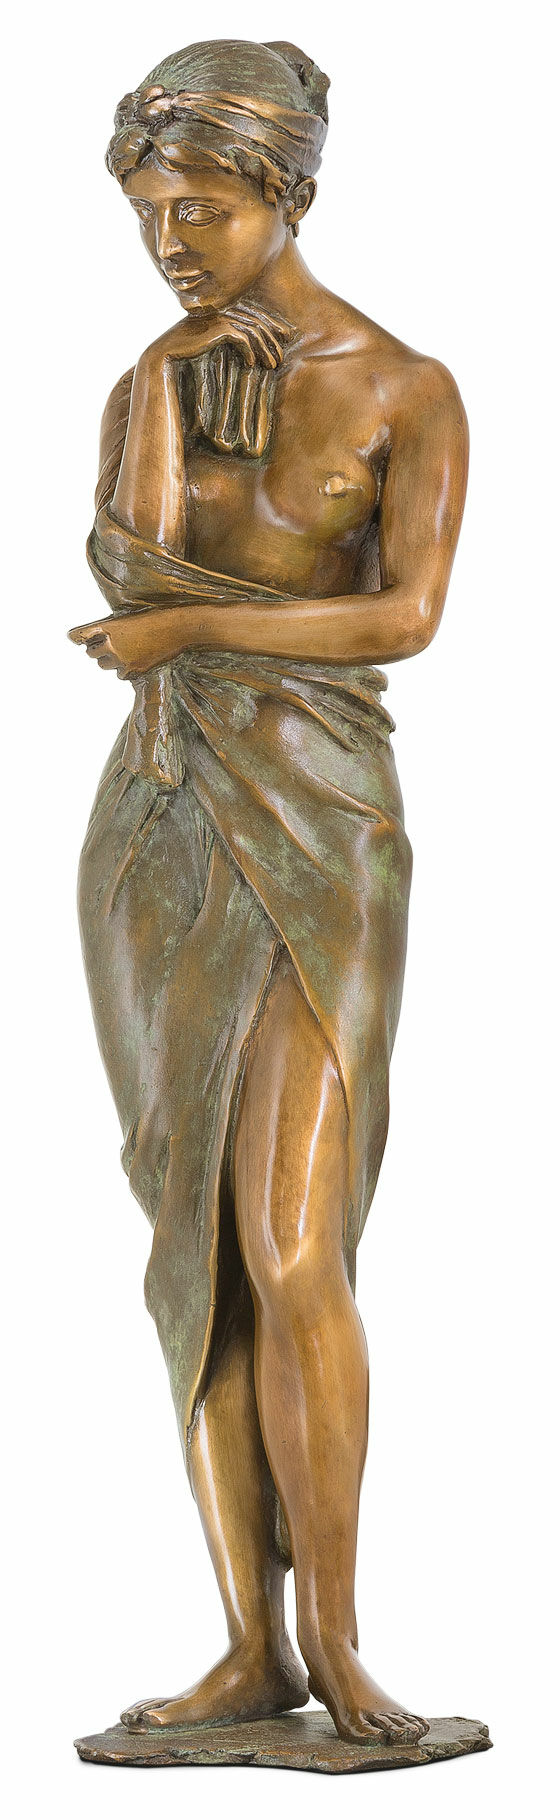 Sculpture "In the Rose Garden", bronze by Erwin A. Schinzel